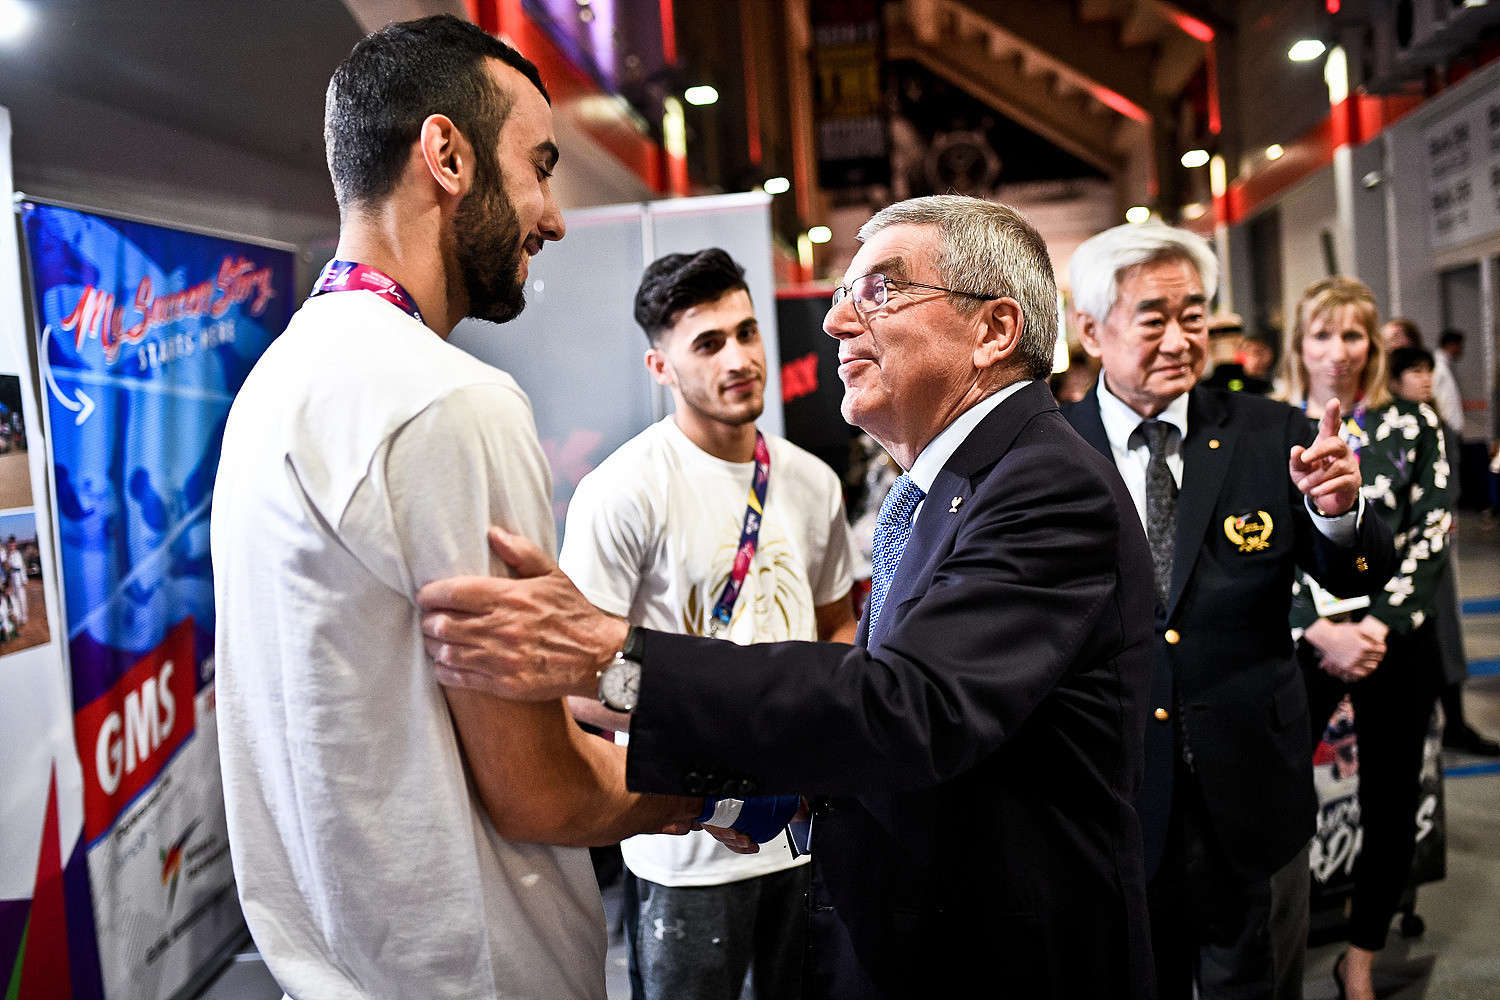 Bach visits Taekwondo Humanitarian Foundation booth during World Championships